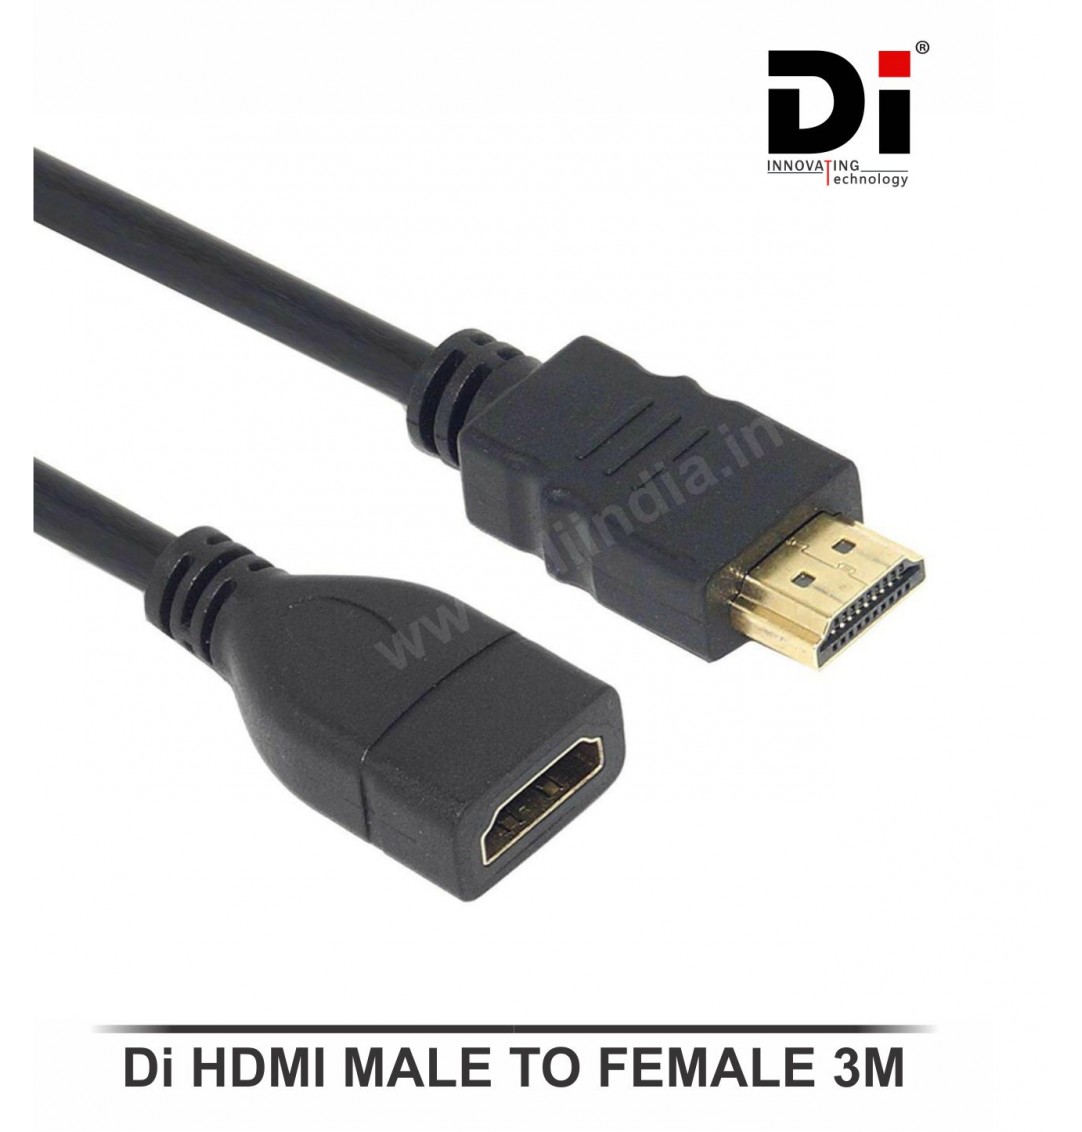 Di HDMI CABLE 3M (MALE TO FEMALE)